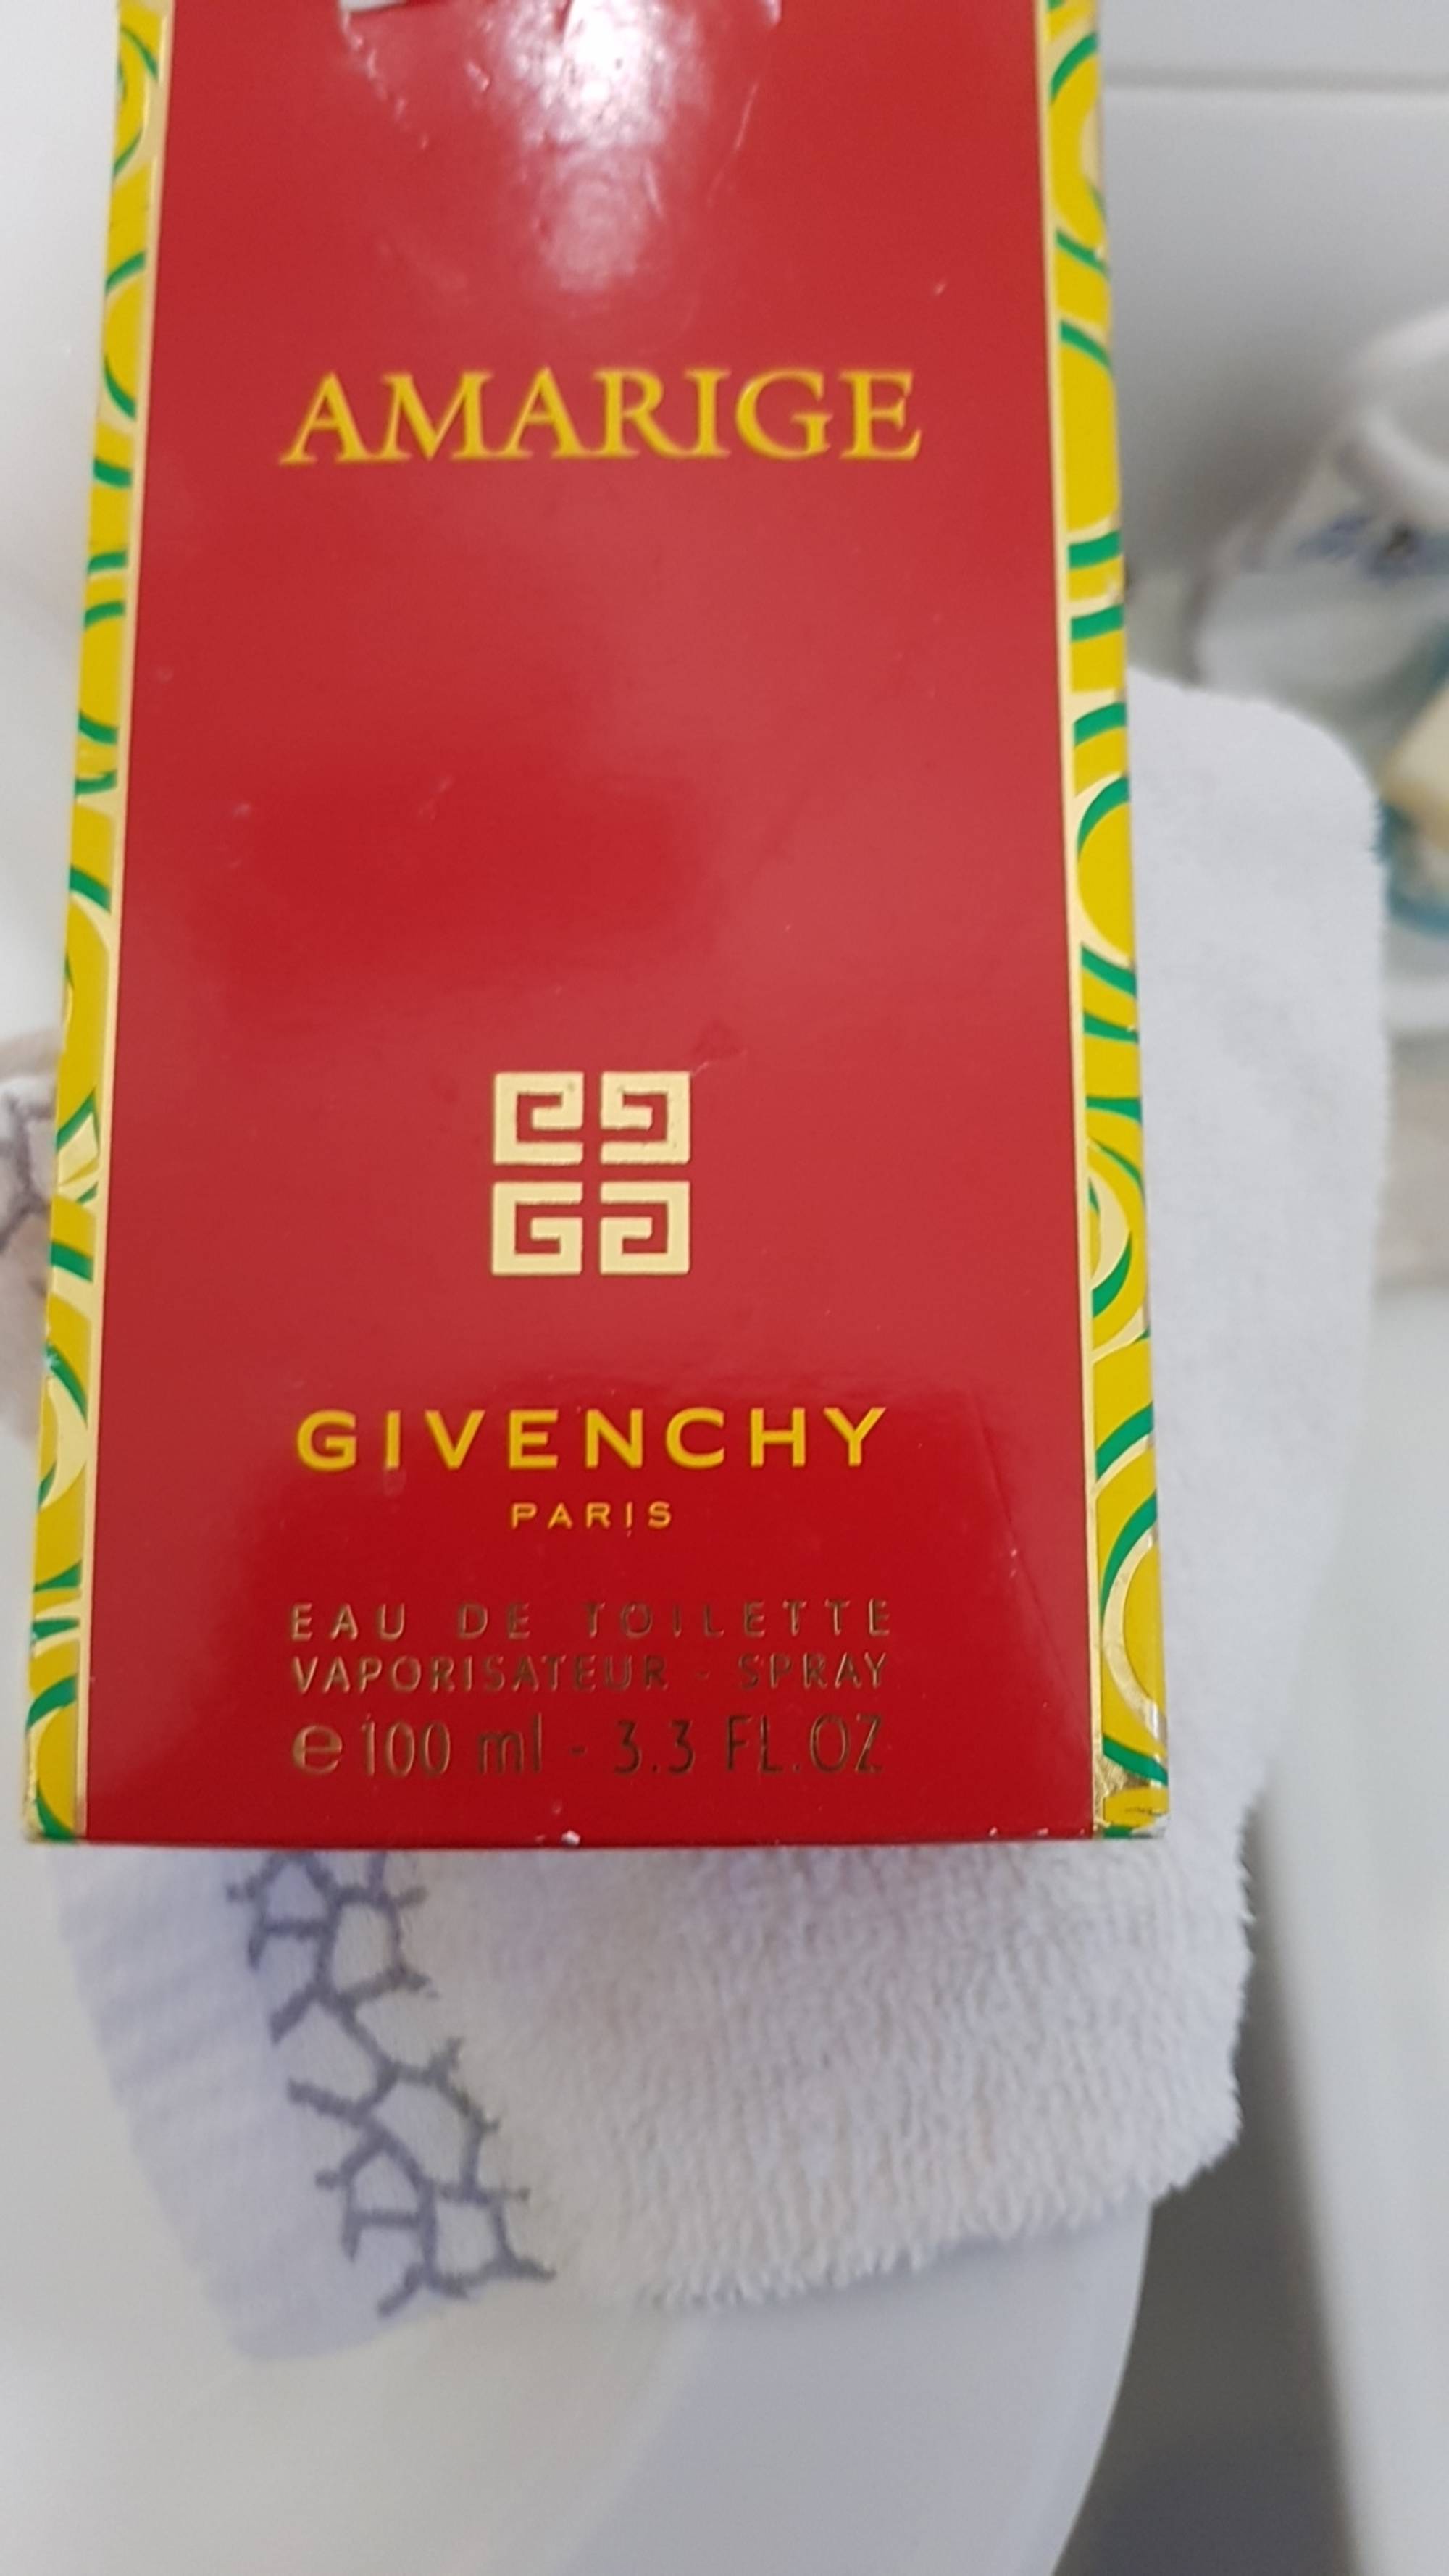 GIVENCHY - Amarige - Eau de toilette vaporisateur